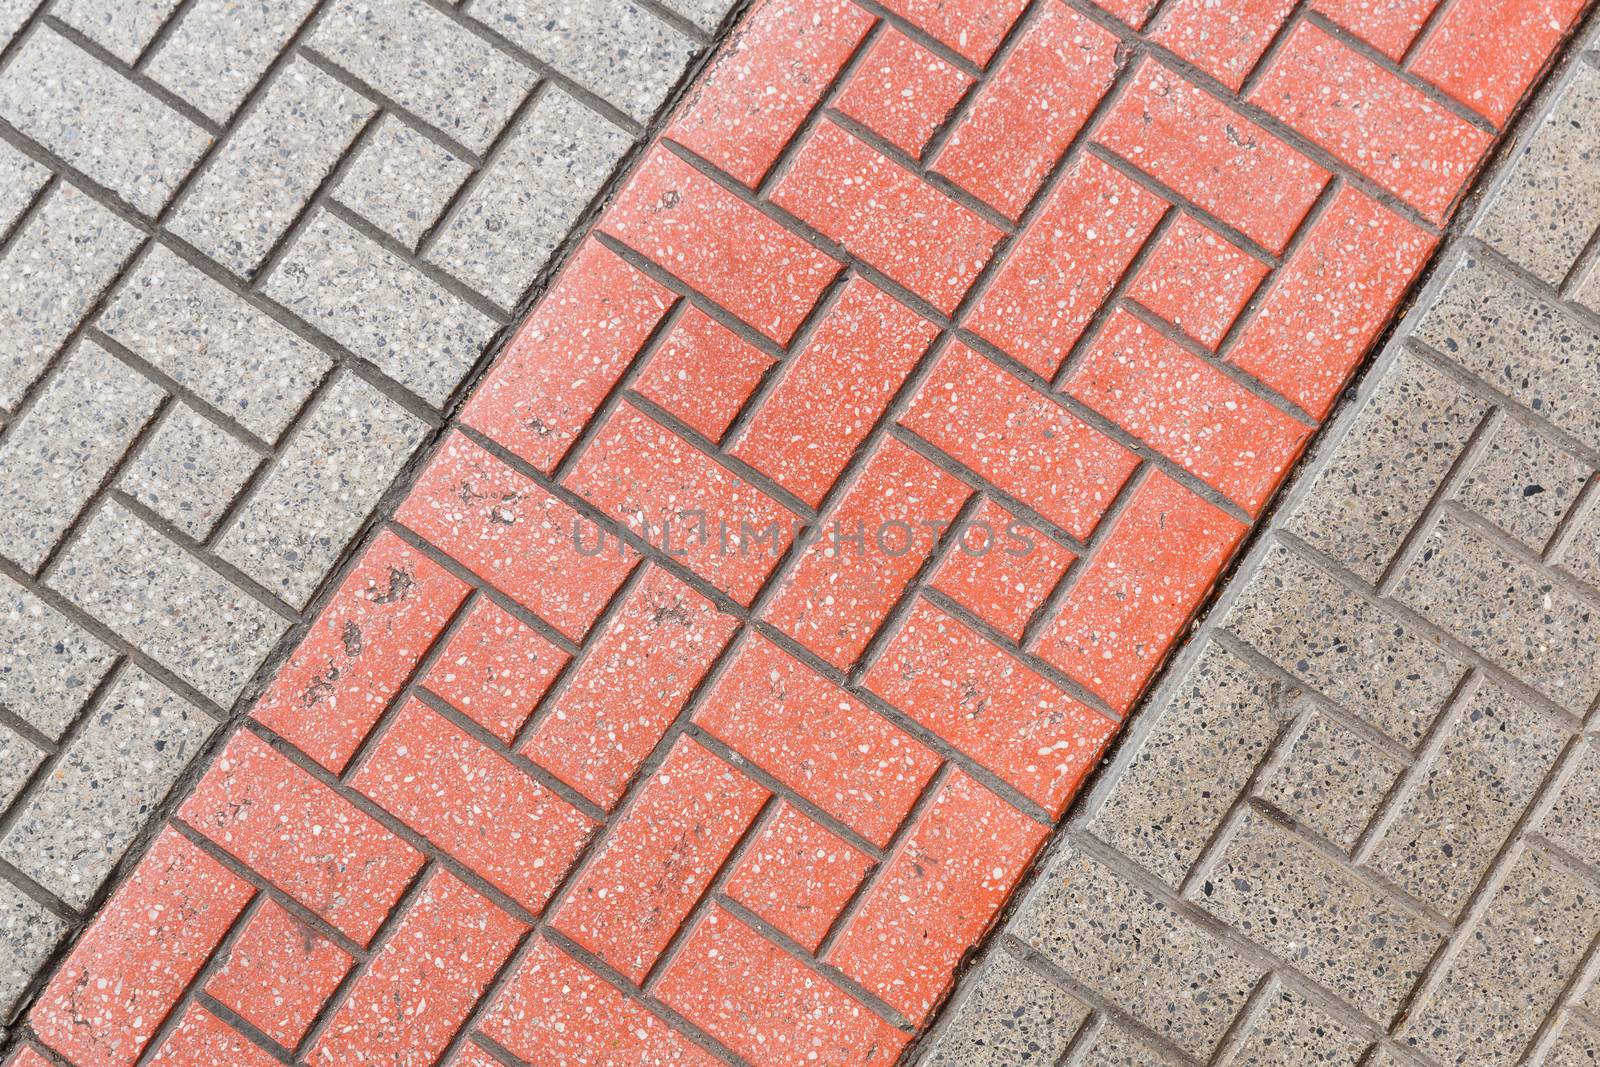 Footpath floor tiles walkway pattern by smuay